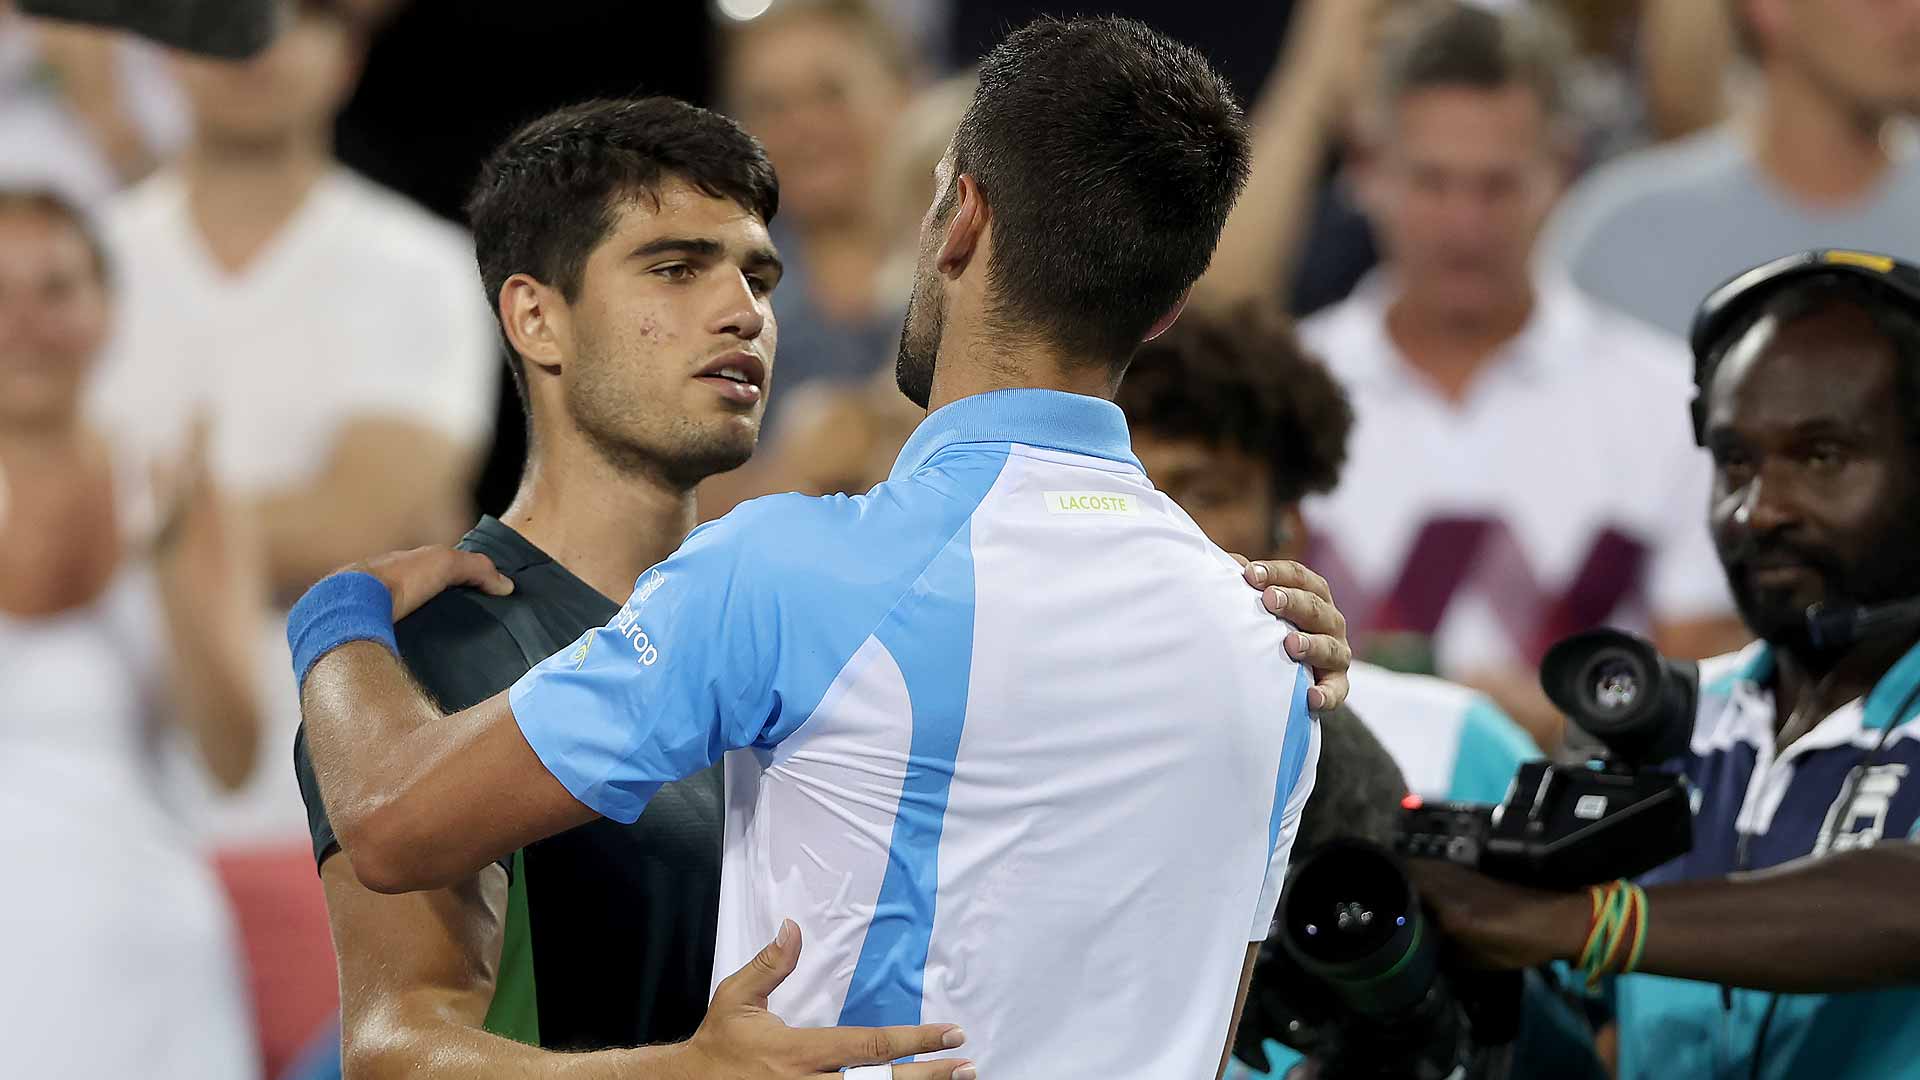 Último do ano! ESPN exibe duelo decisivo entre Alcaraz e Djokovic pelo ATP  Finals - ESPN MediaZone Brasil